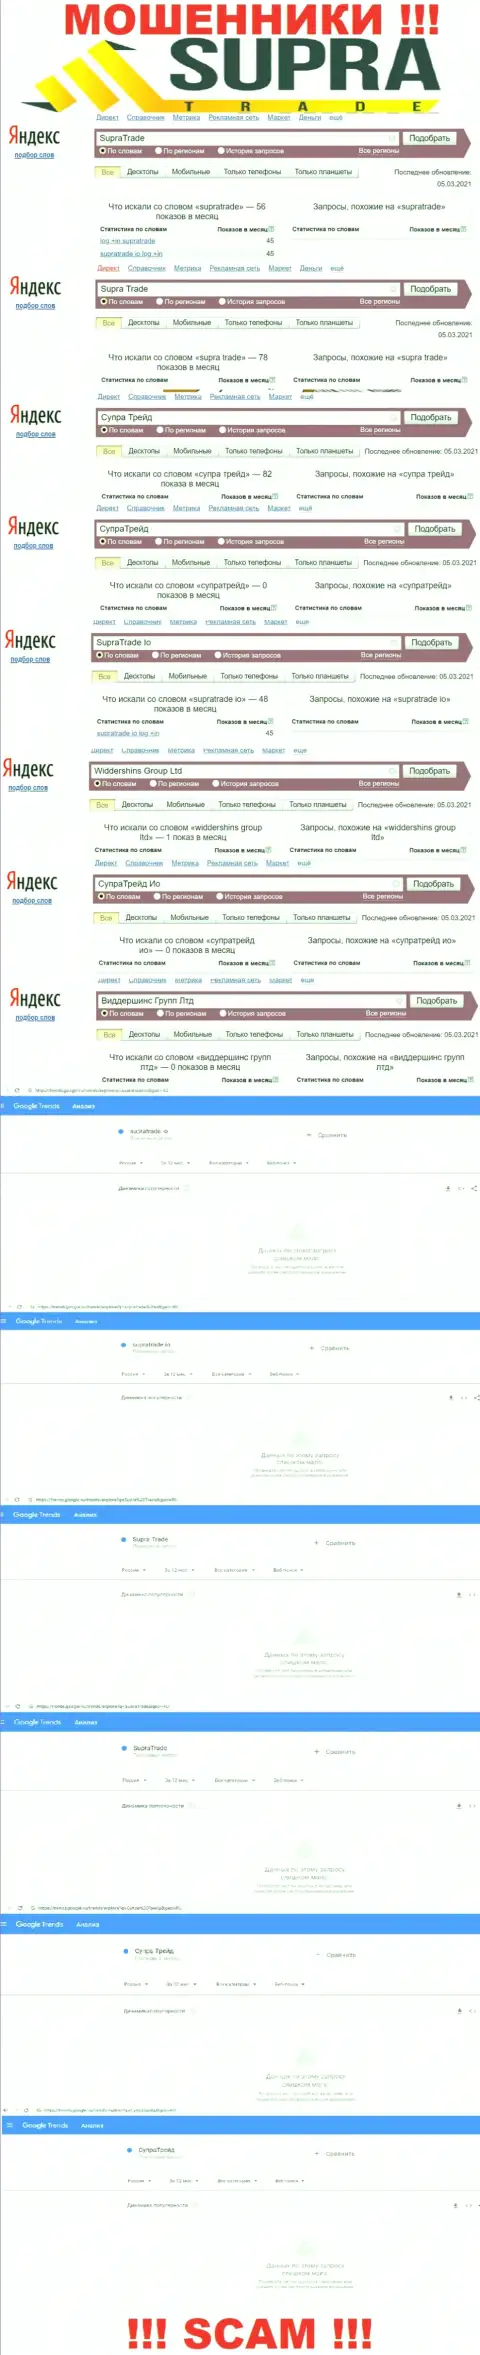 Онлайн-запросы по бренду мошенников SupraTrade Io в поисковиках глобальной internet сети